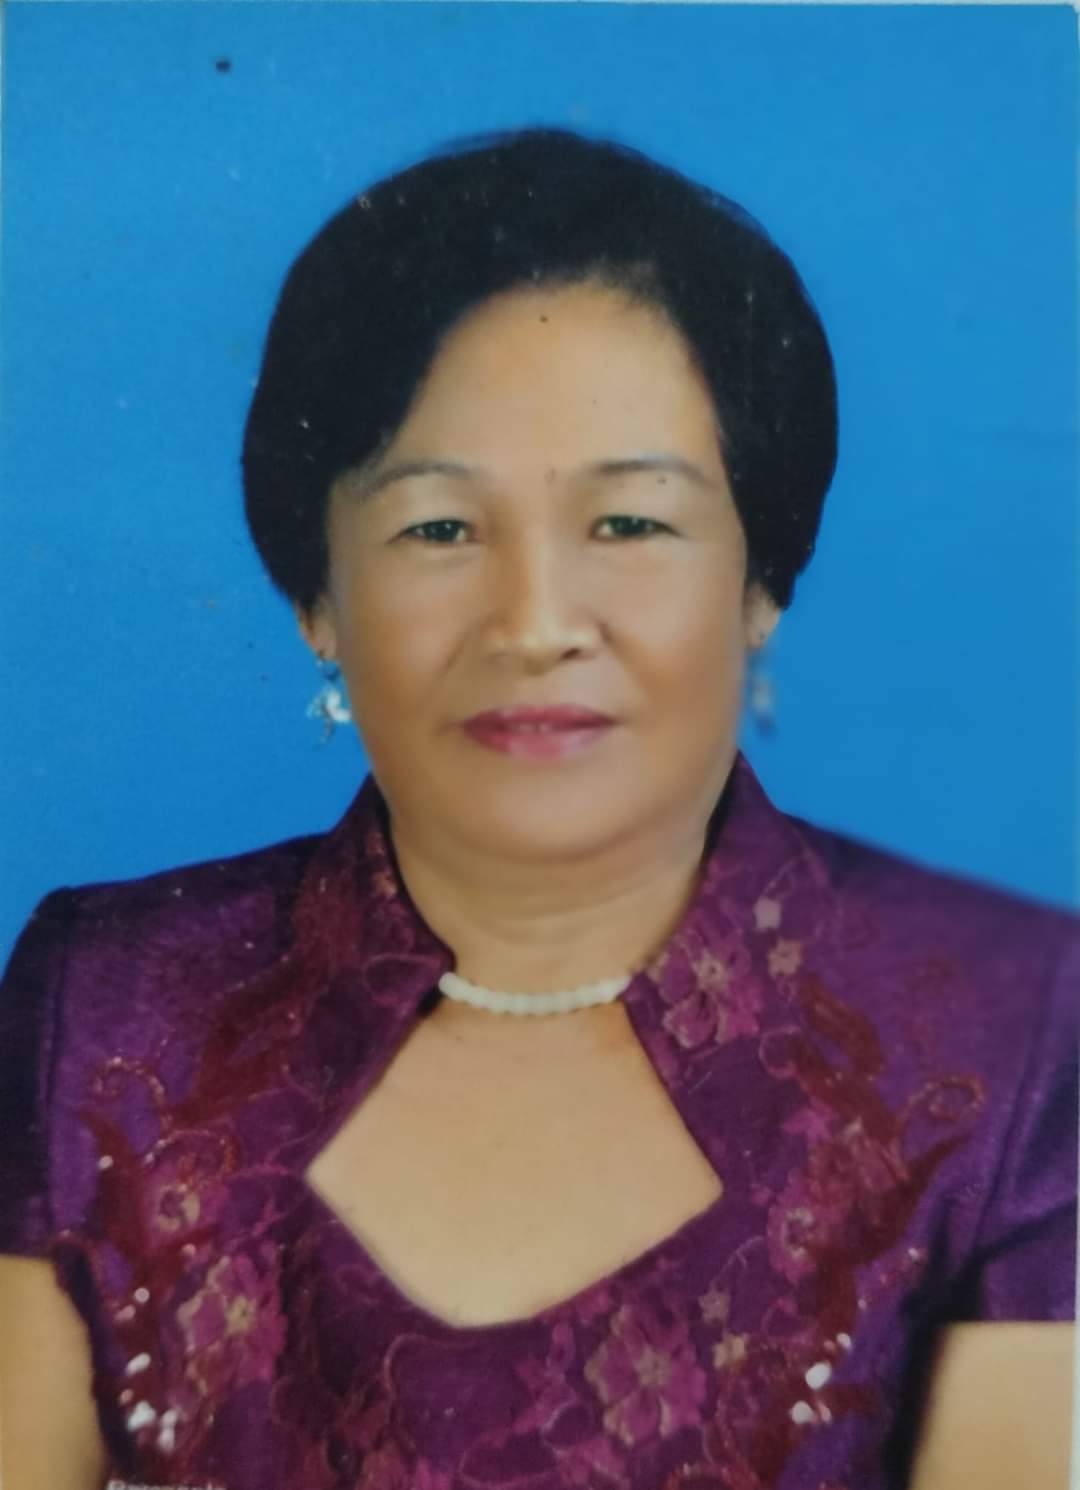 Tranquilina Maniwang, former mayor of Sikatuna, dead at 71